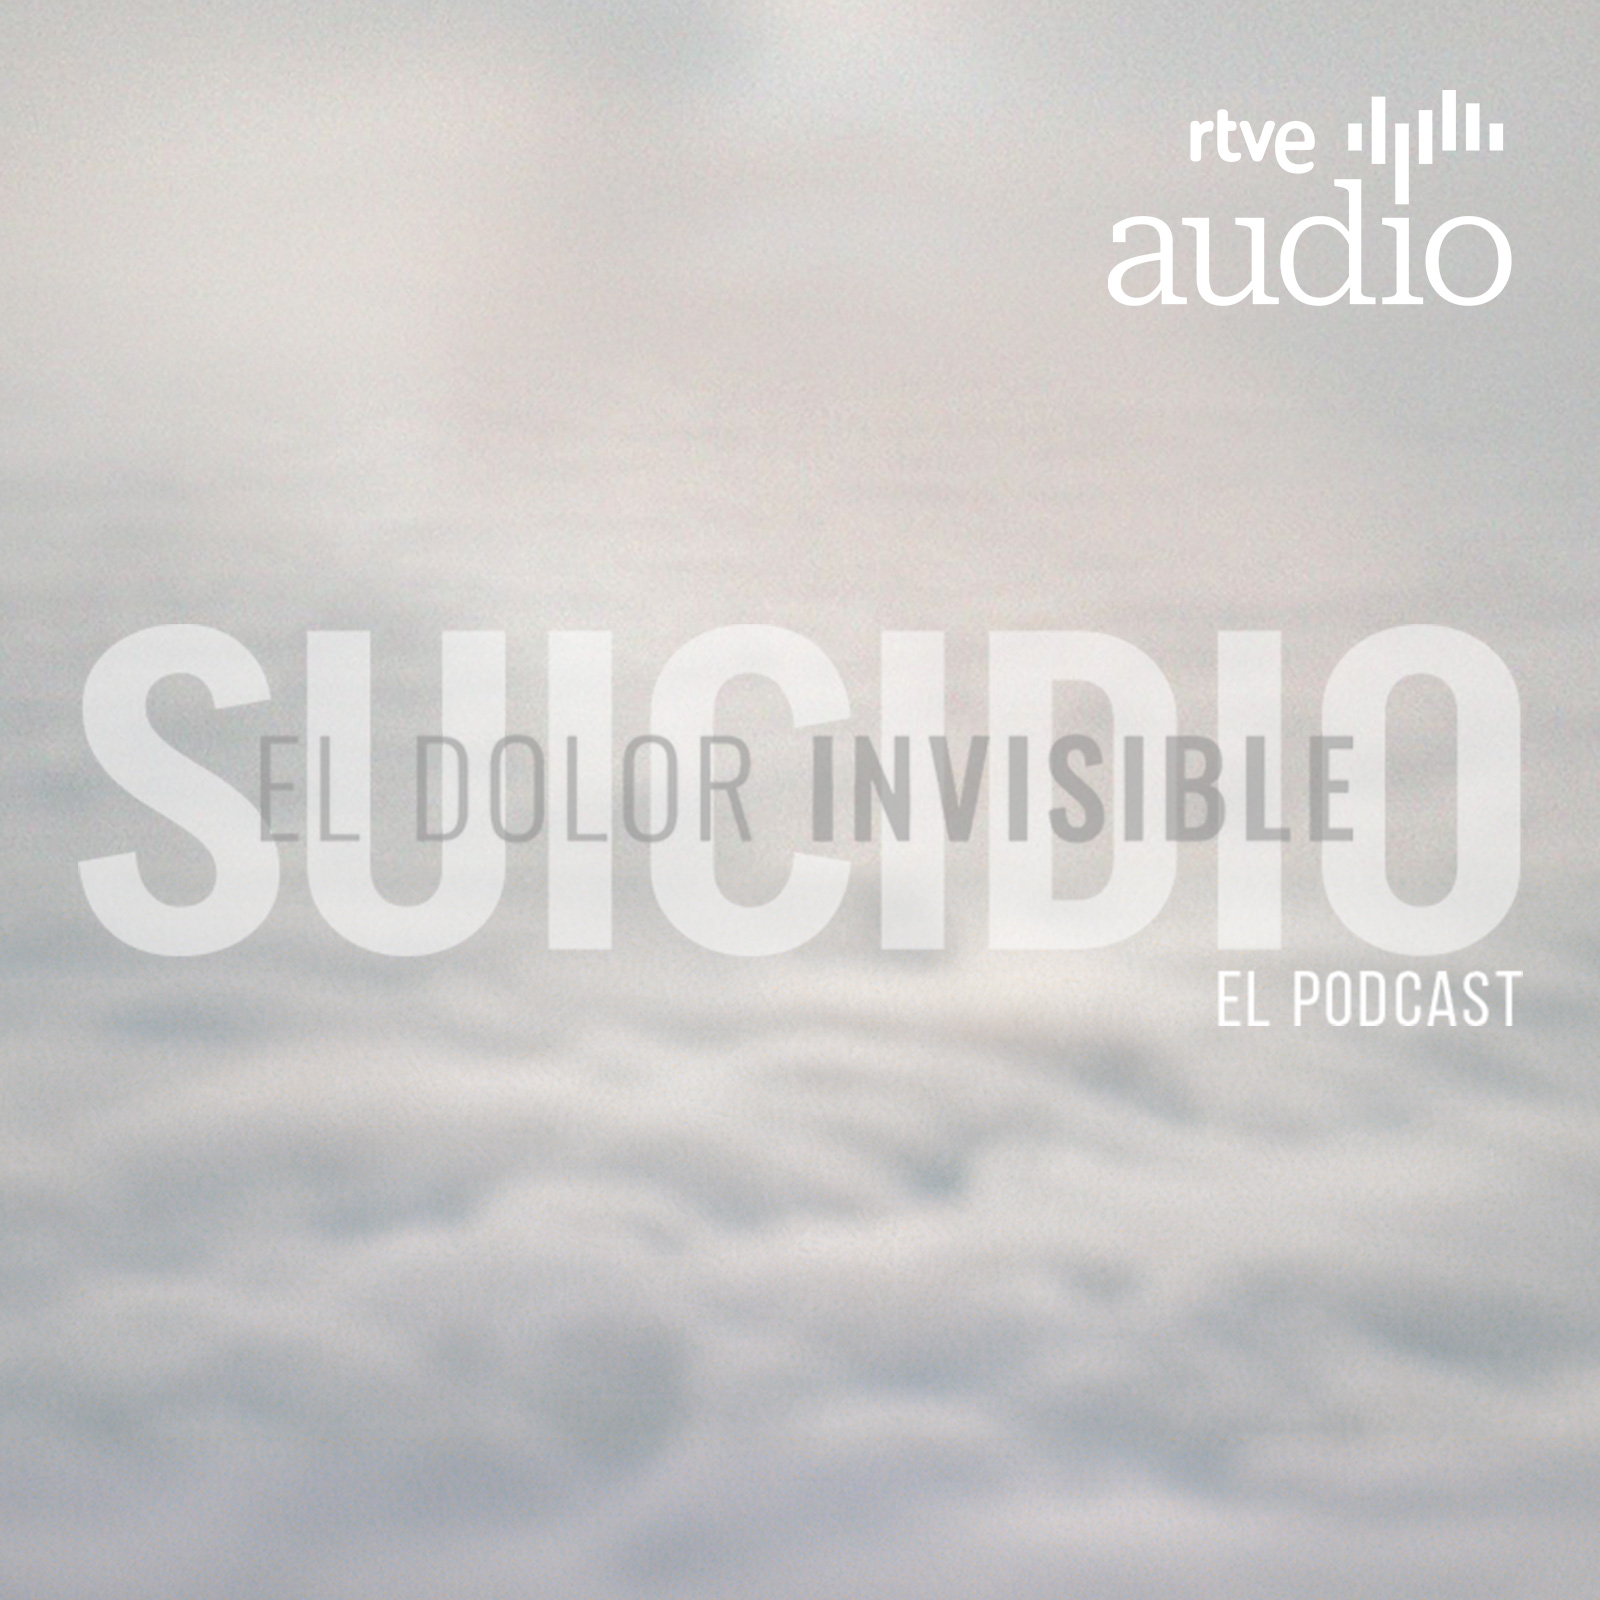 Suicidio. El dolor invisible. El podcast